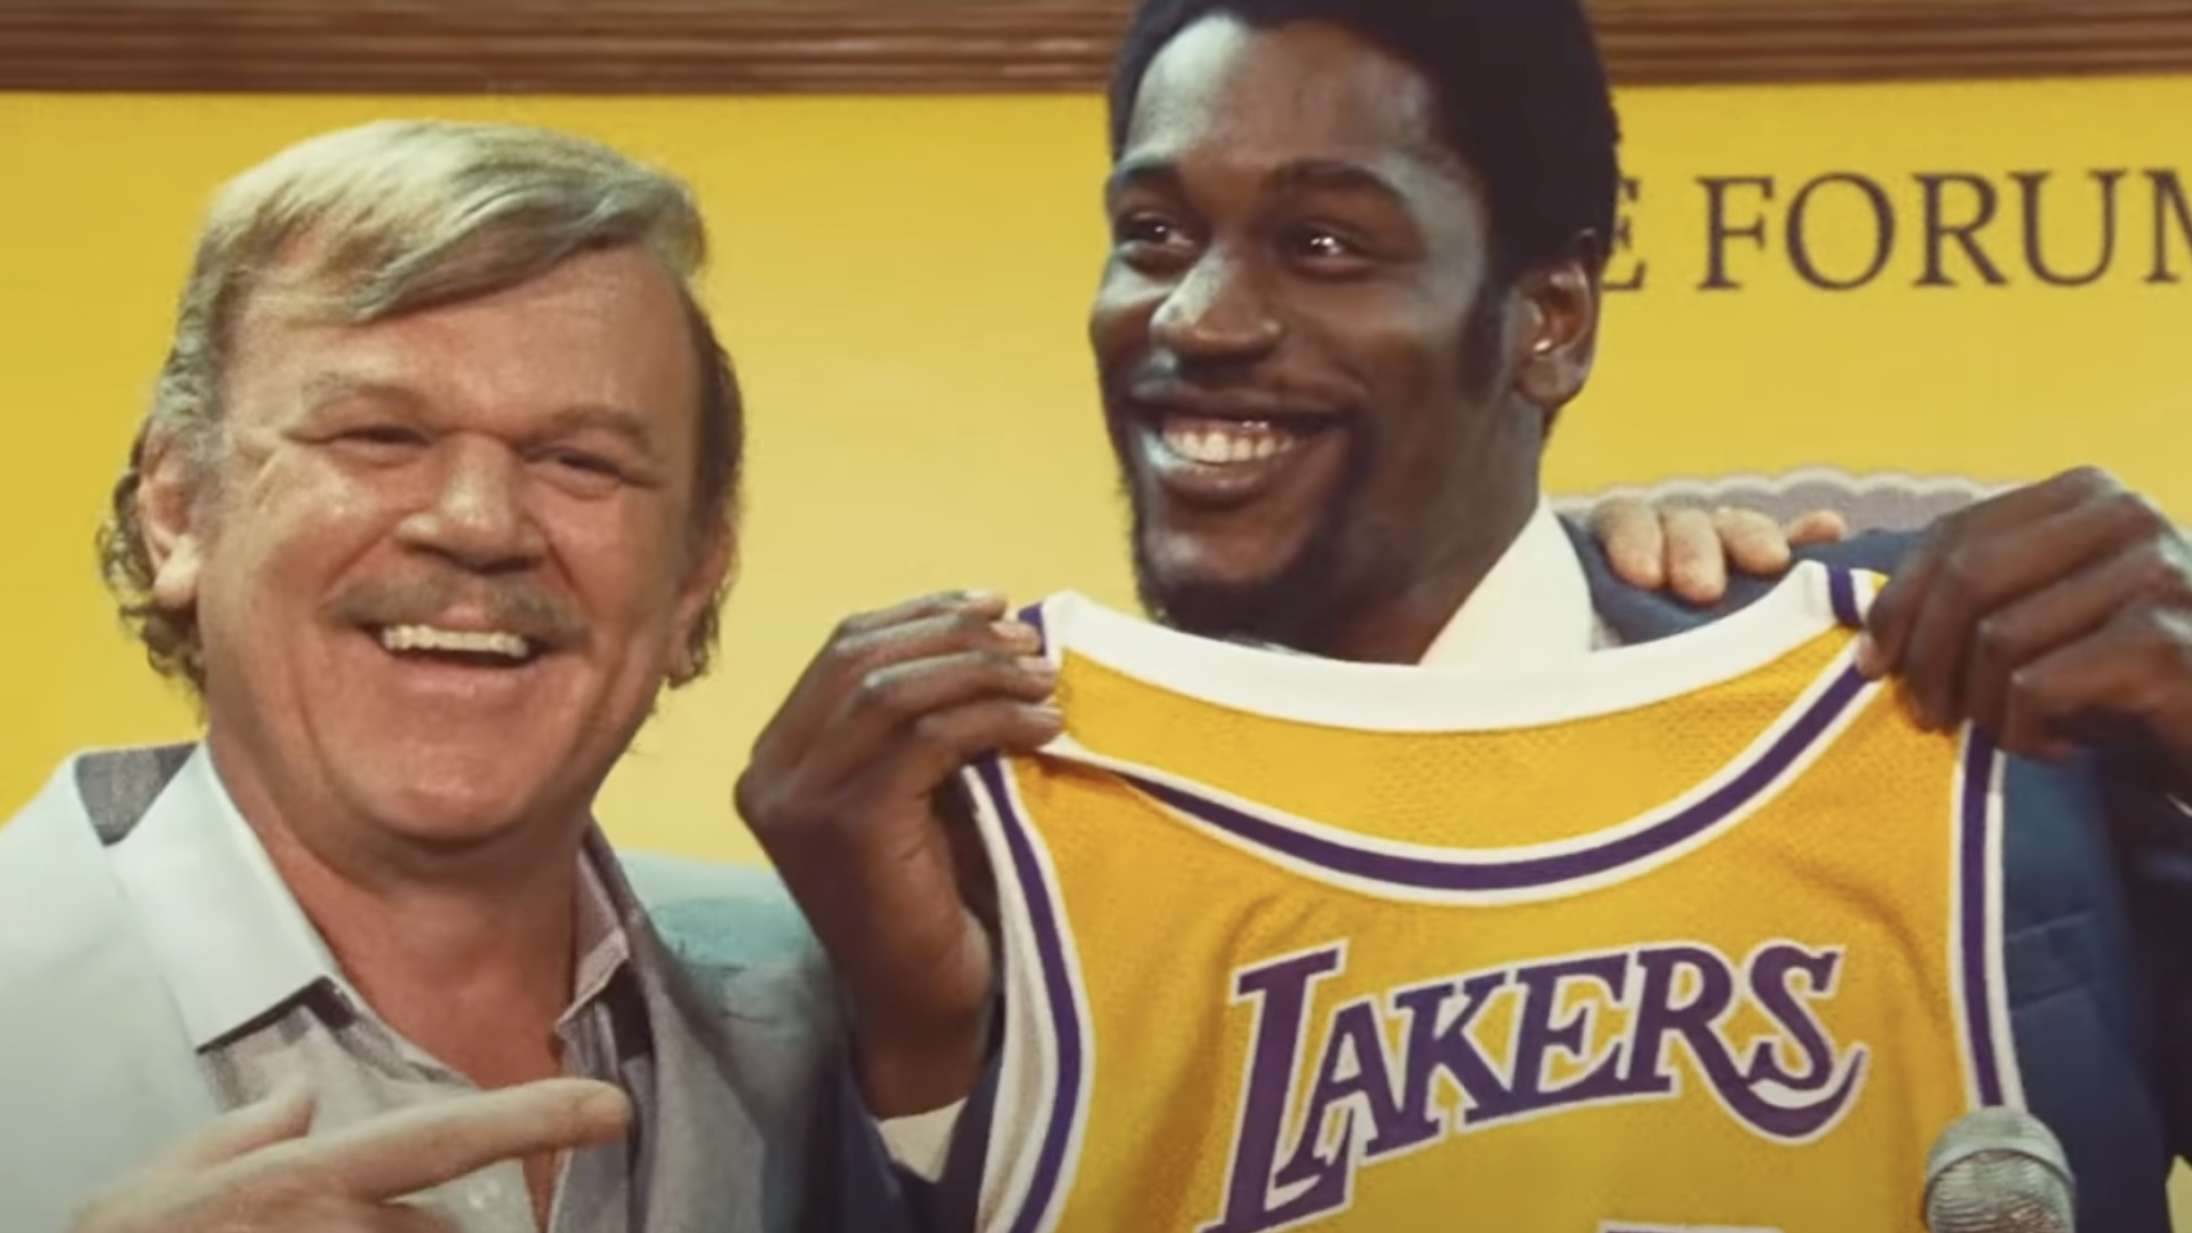 Traileren til HBO’s ‘Winning Time’ om L.A. Lakers giver løfter om en sprudlende underholdende basketserie